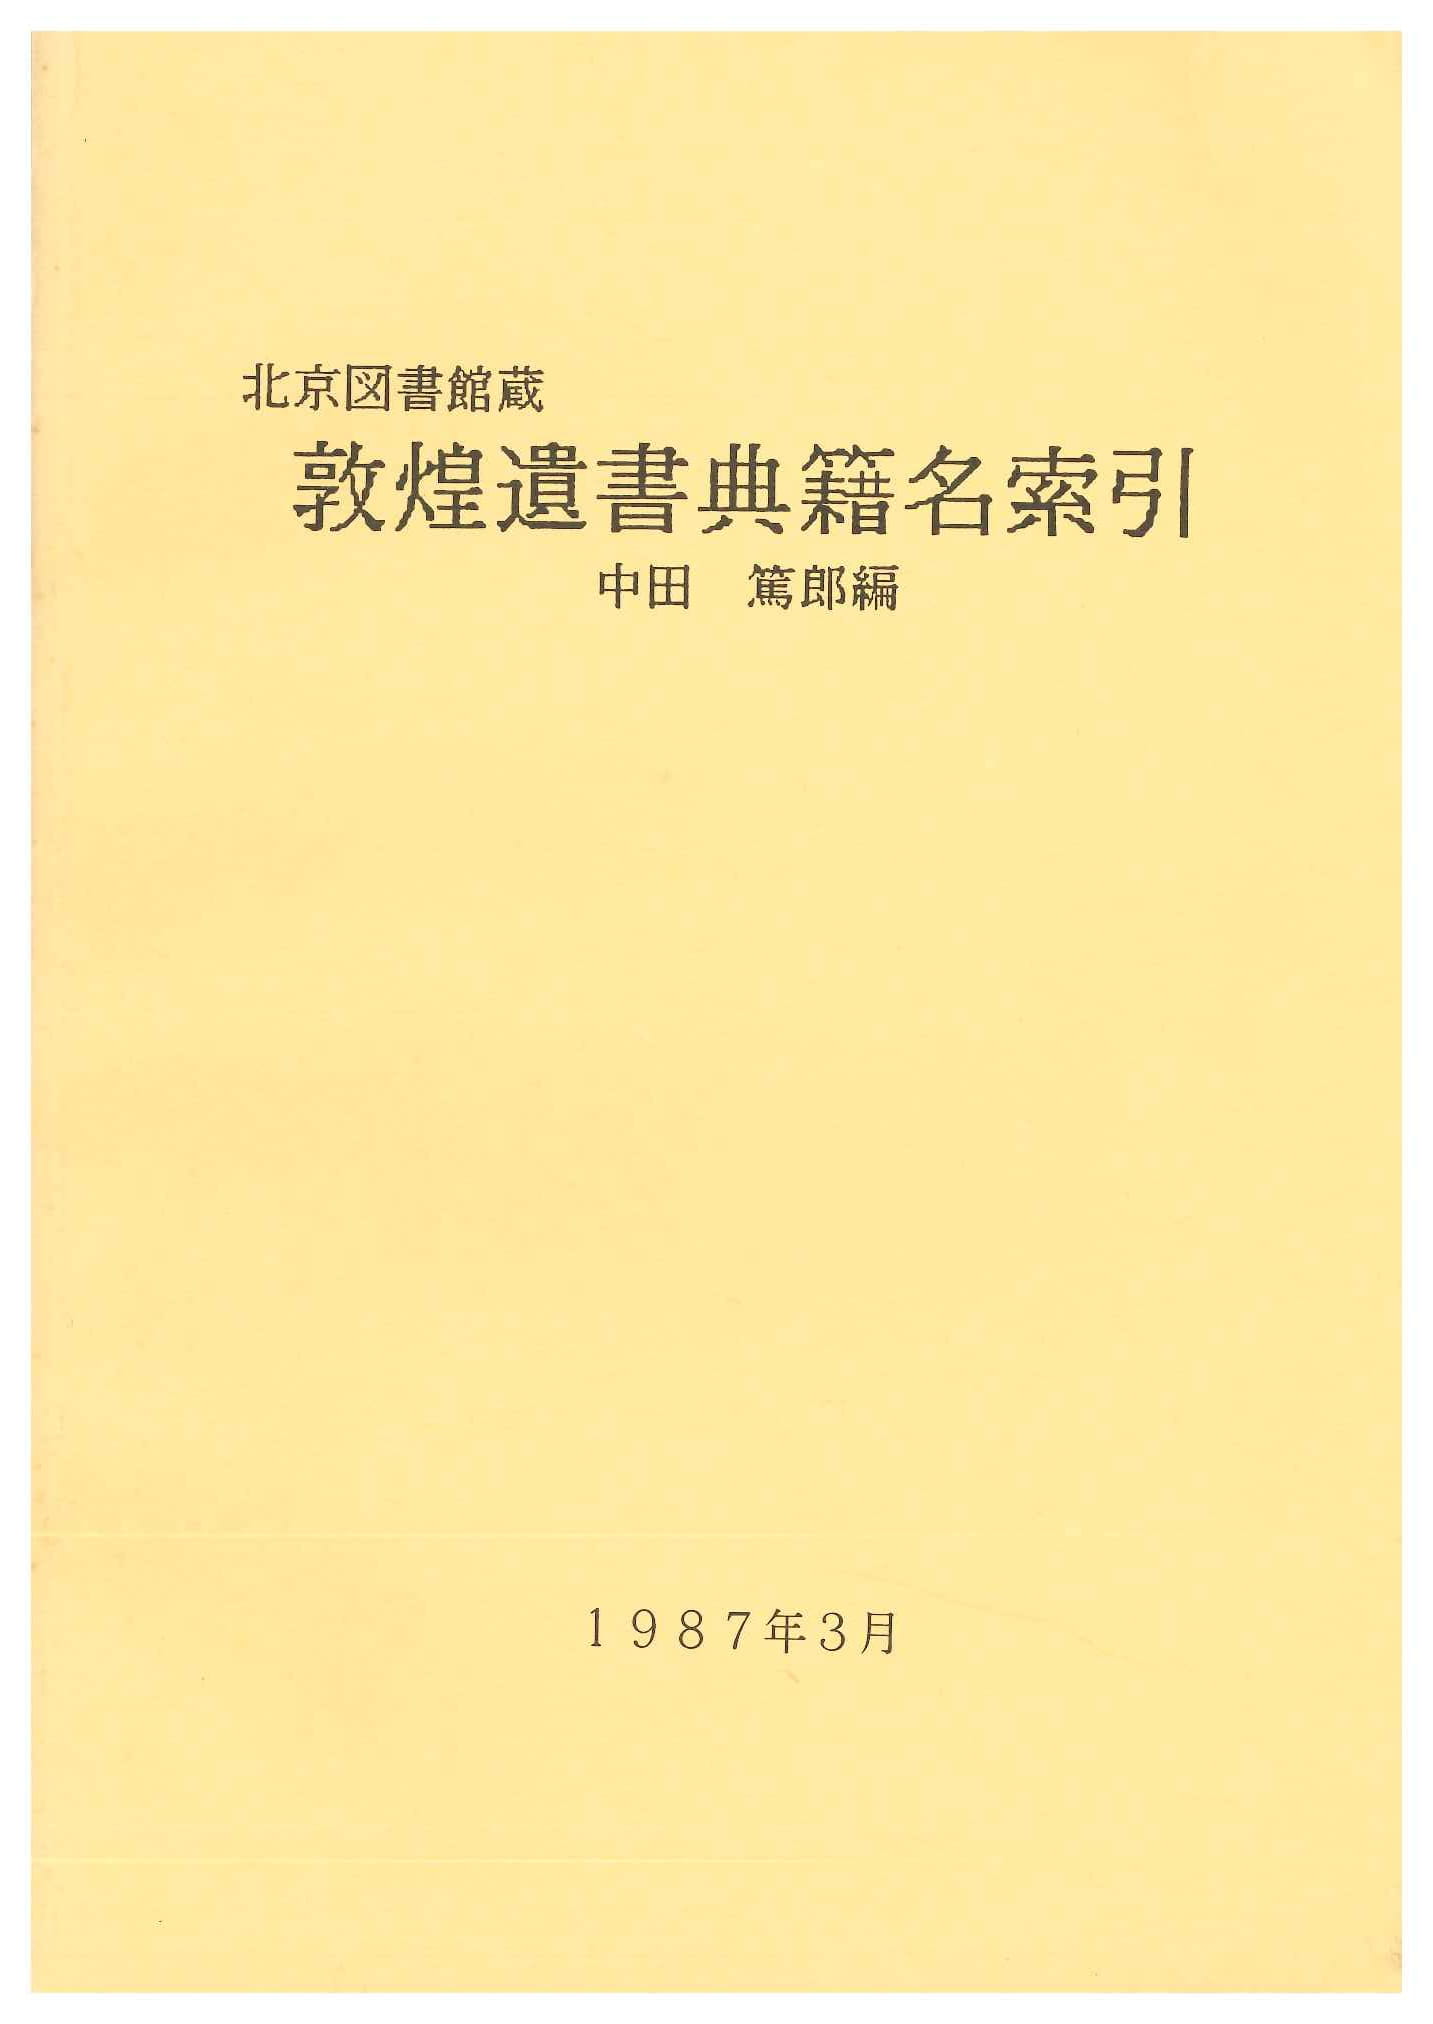 北京図書館蔵 敦煌遺書典籍名索引